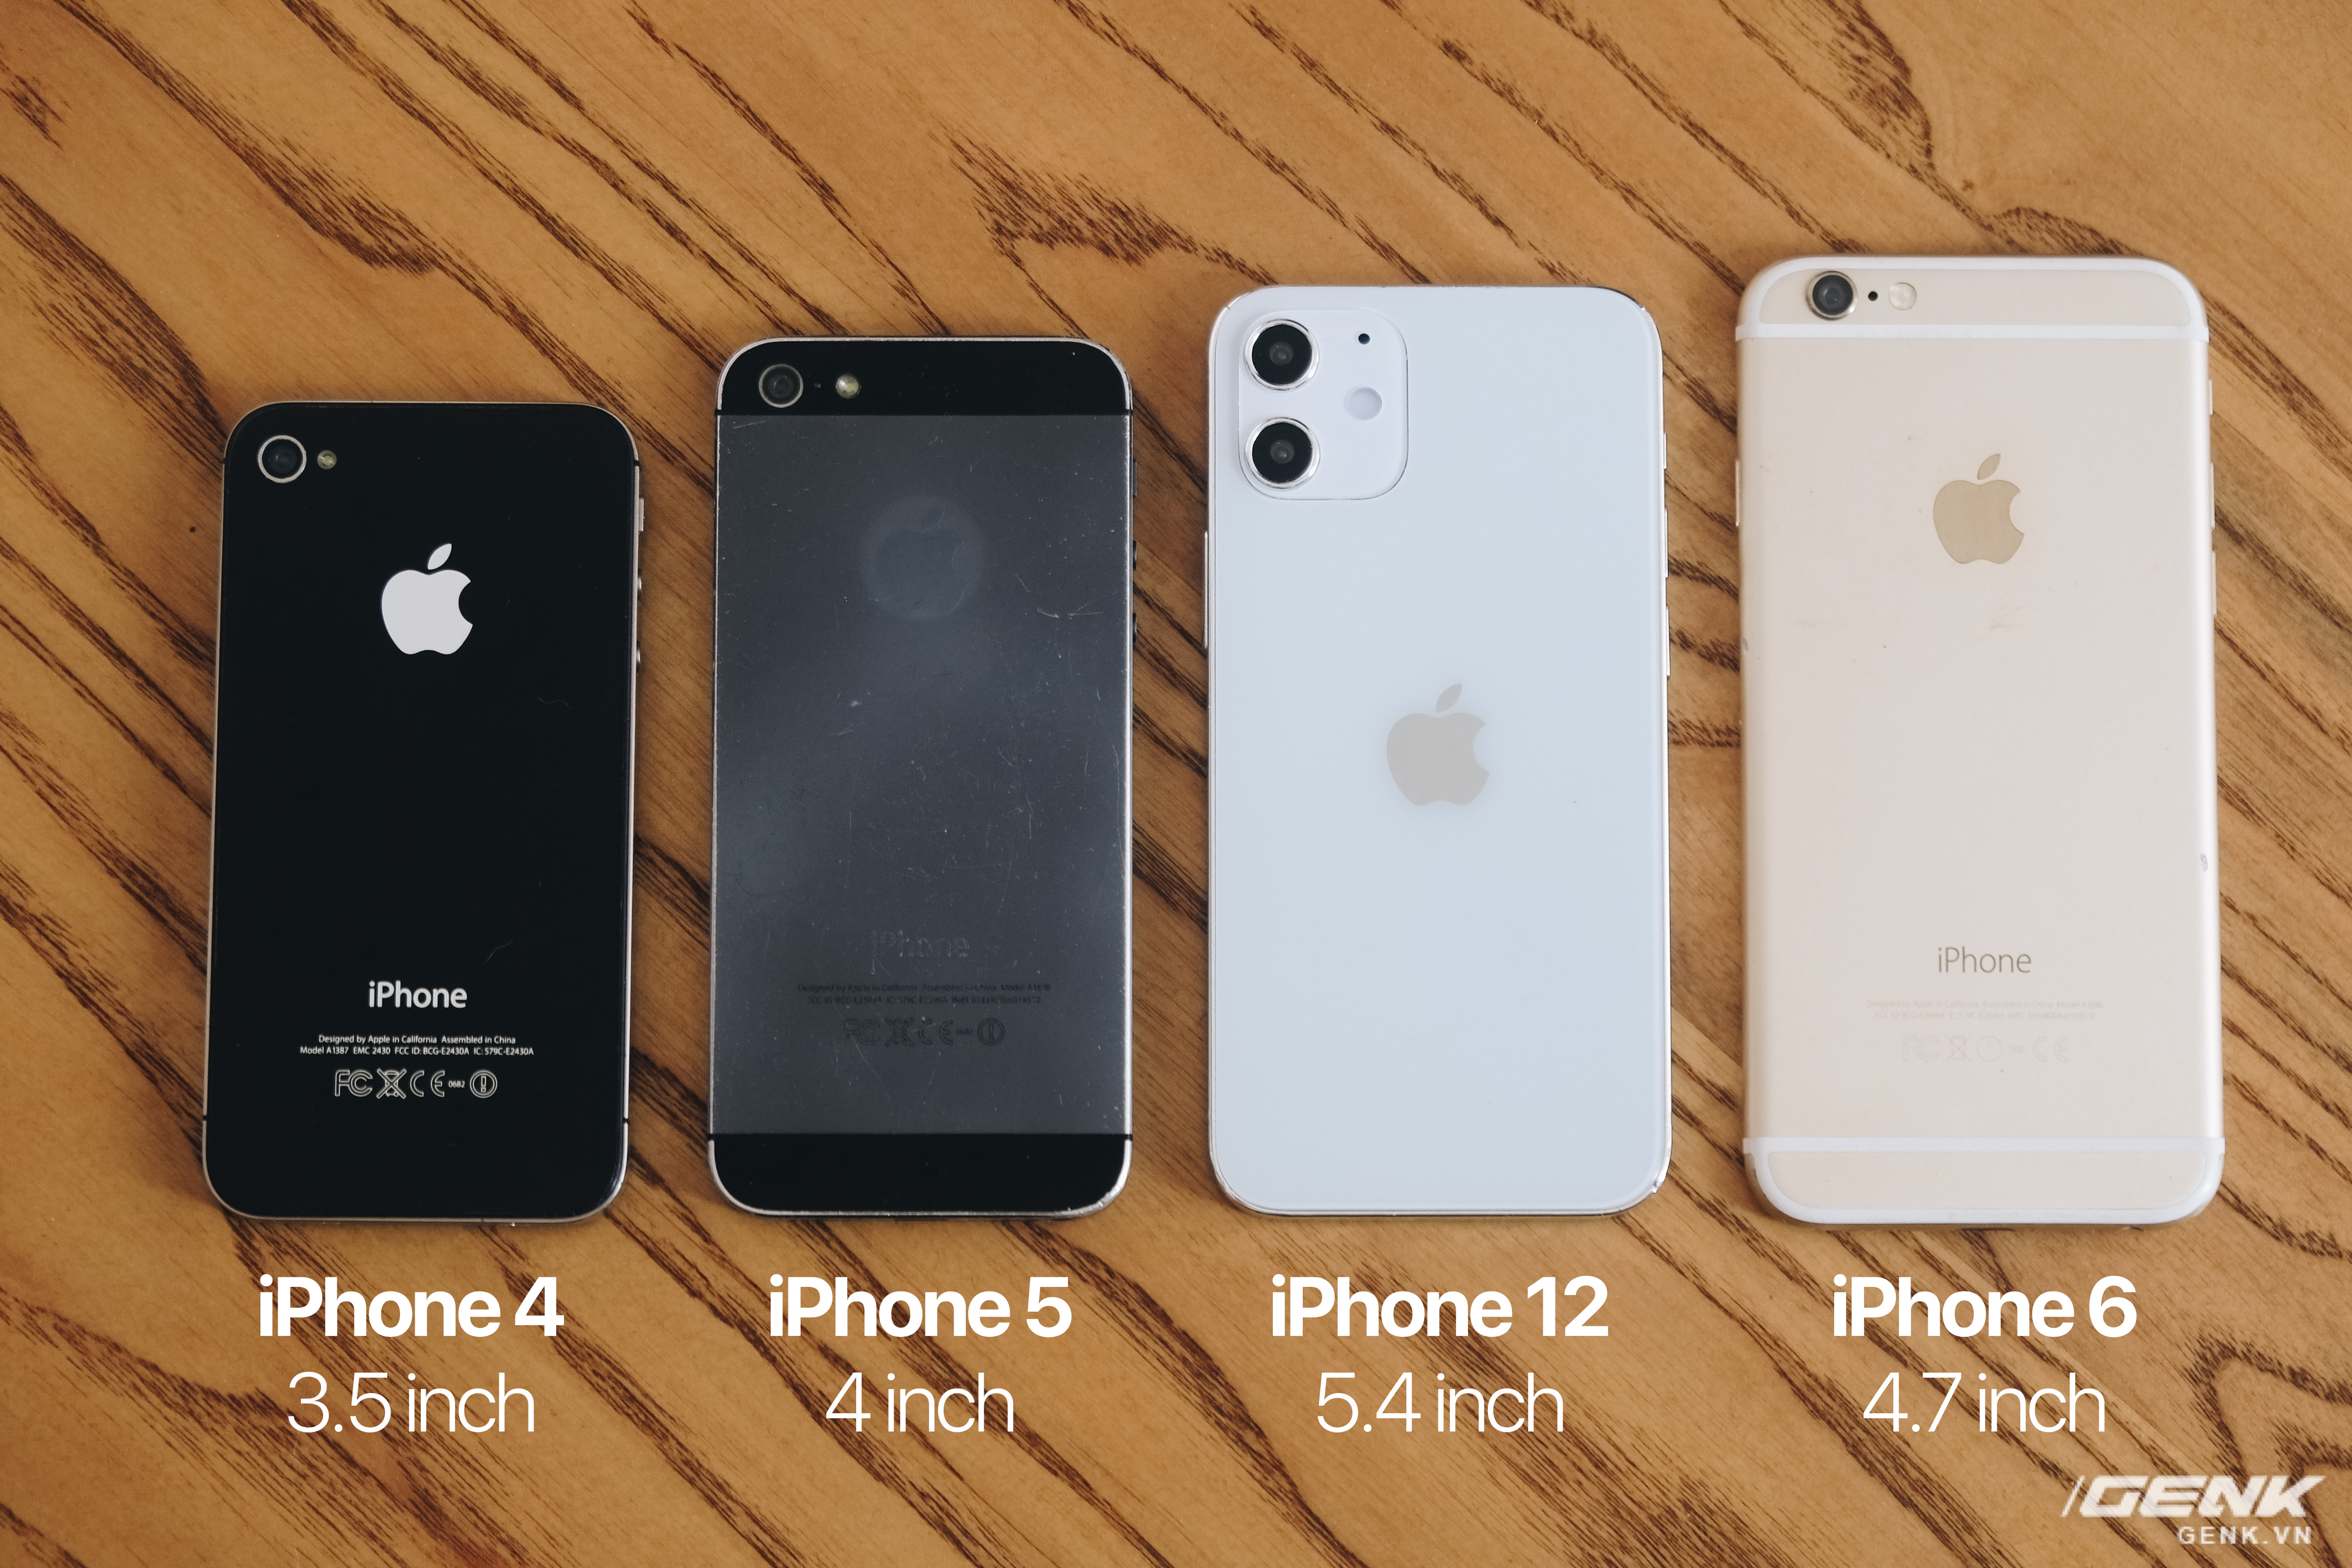 So sánh - iPhone 12 5.4 inch - iPhone 4 - iPhone 5 - iPhone 6: Hãy so sánh giữa các dòng iPhone khác nhau bao gồm iPhone 12 5,4 inch, iPhone 4, iPhone 5 và iPhone 6 để hiểu rõ hơn về sự khác biệt giữa chúng. Xem hình ảnh liên quan để tìm hiểu thêm về điểm nổi bật của từng loại.